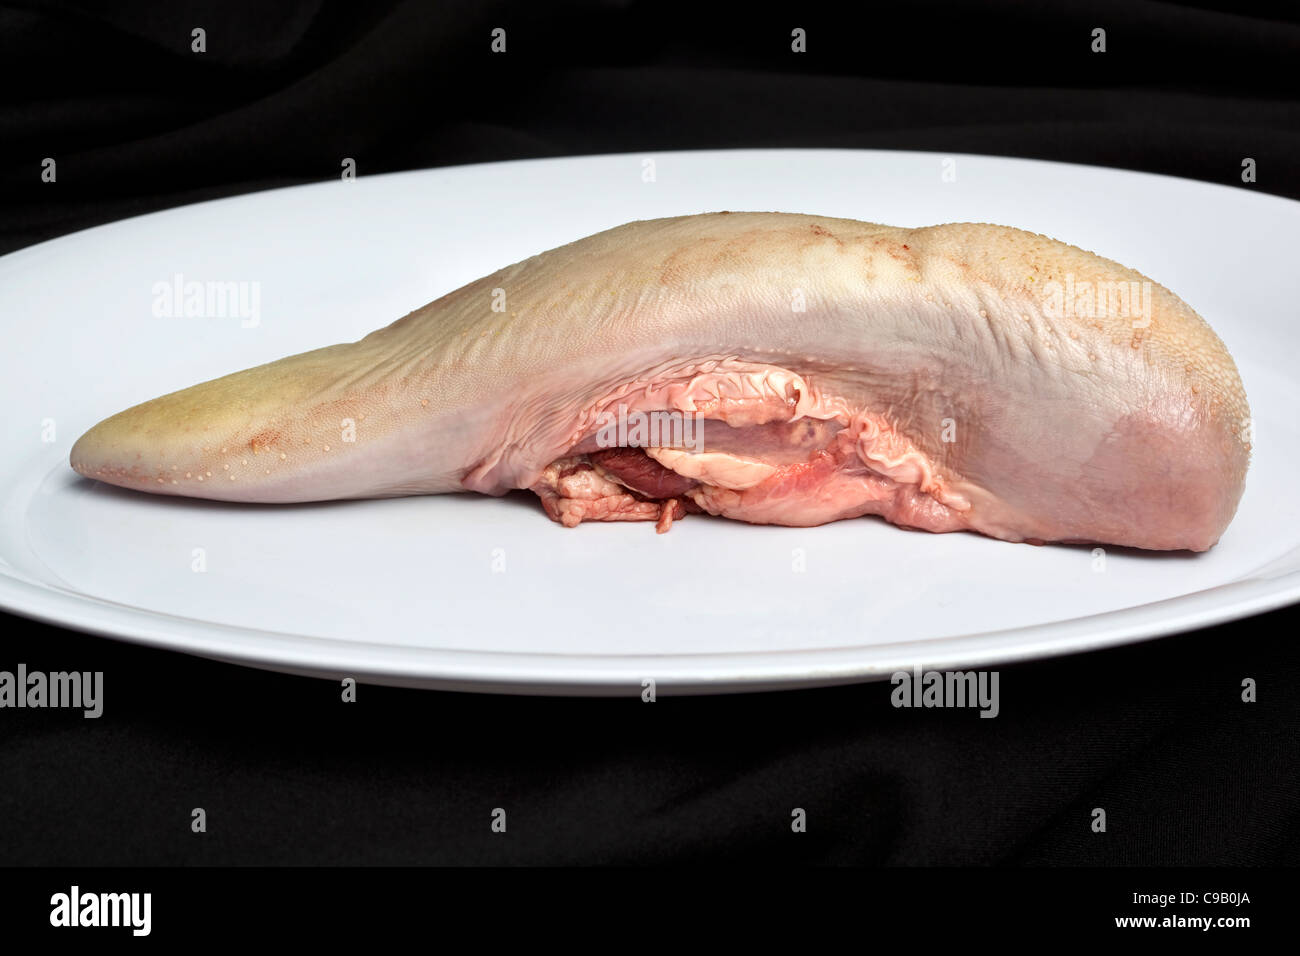 Rohe Rinderzunge auf einem weißen Teller - ein Beispiel für das seltsame oder seltsame Essen, das von Menschen auf der ganzen Welt gegessen wird Stockfoto